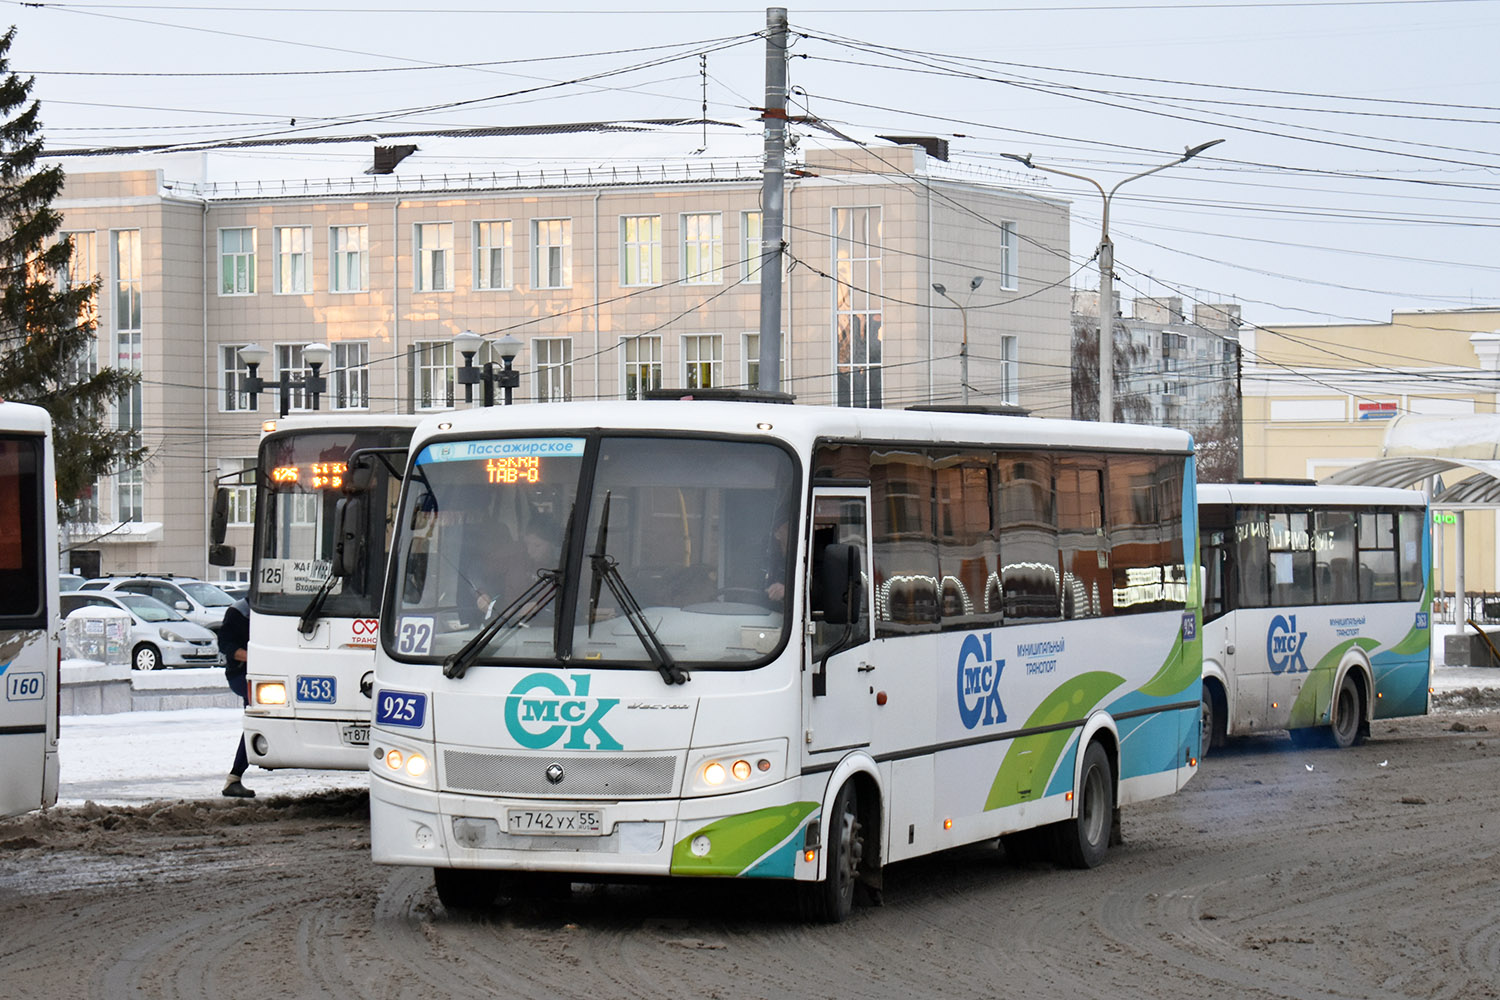 Omszki terület, PAZ-320414-04 "Vektor" (1-2) sz.: 925; Omszki terület — Bus stops